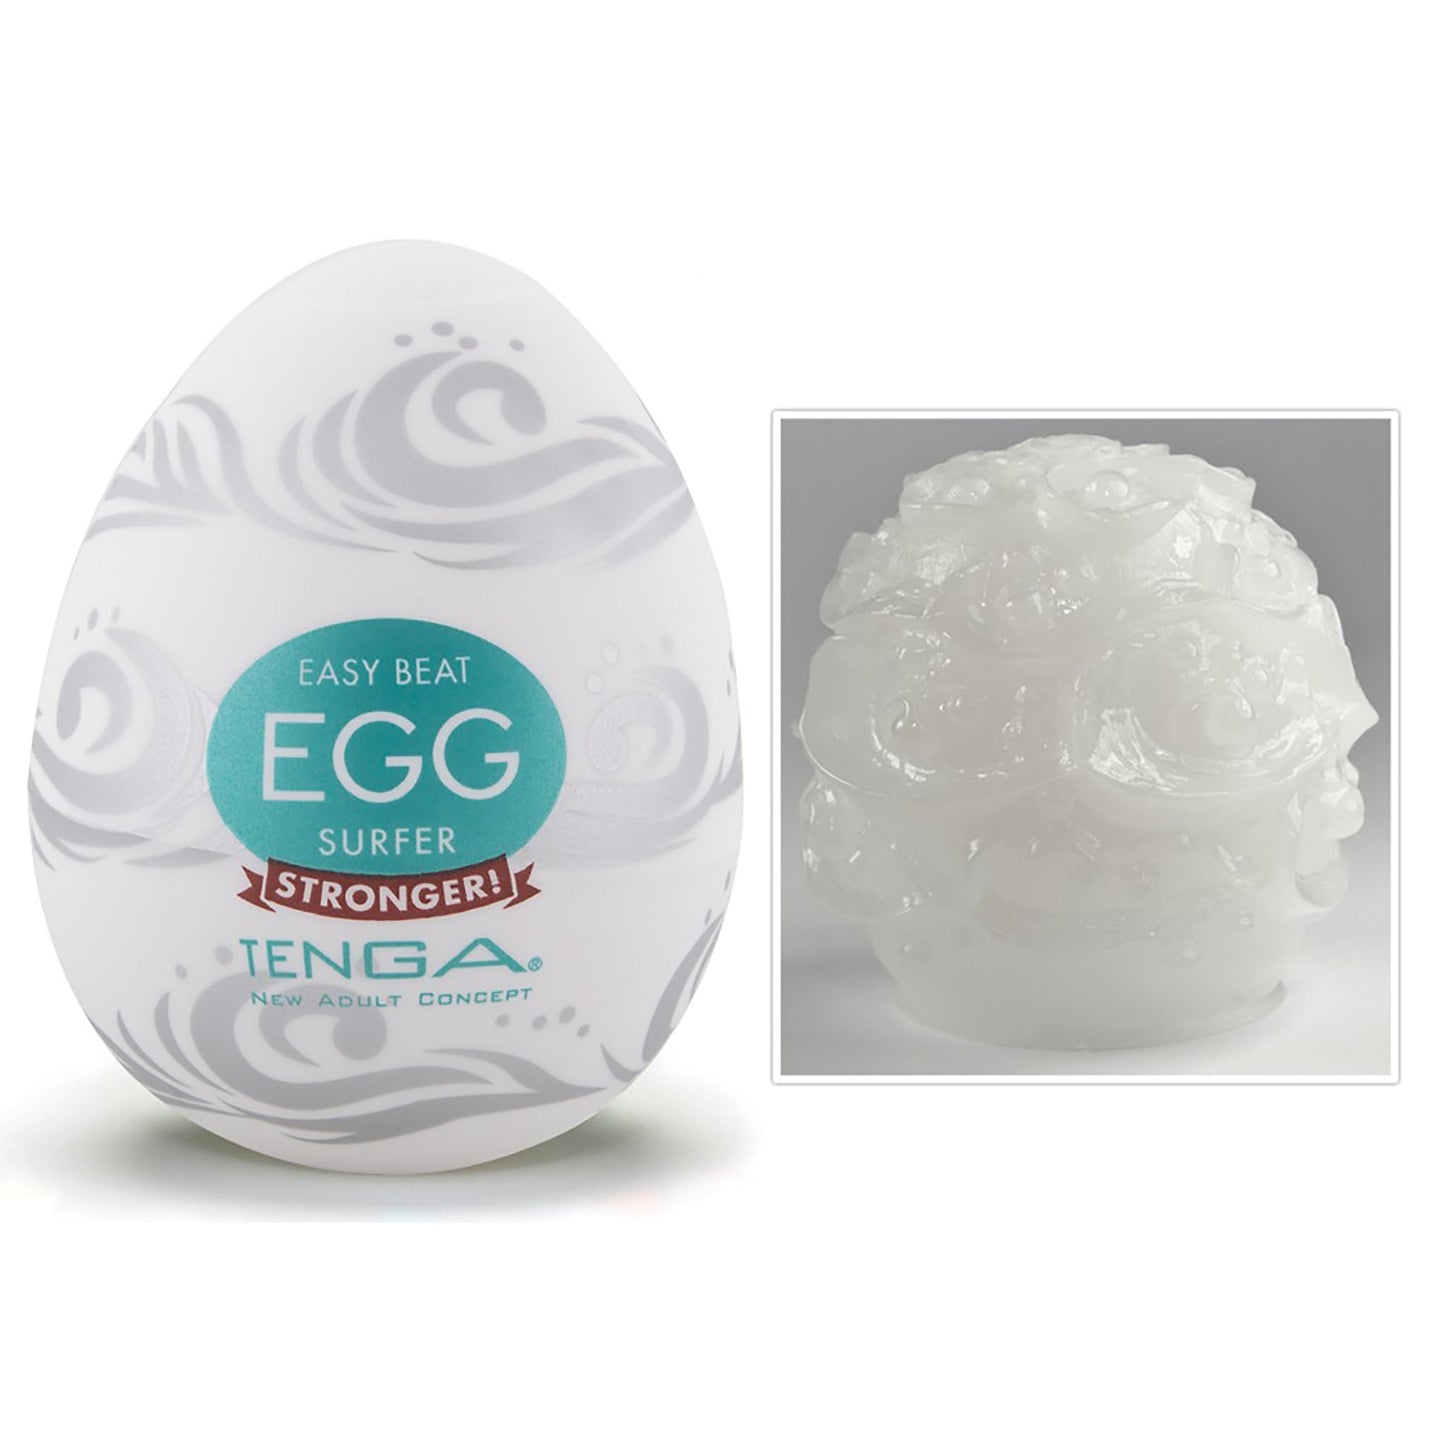 Tenga Egg Variety 2 6er Pack Eier, easy beat egg shiny, stronger! Detail